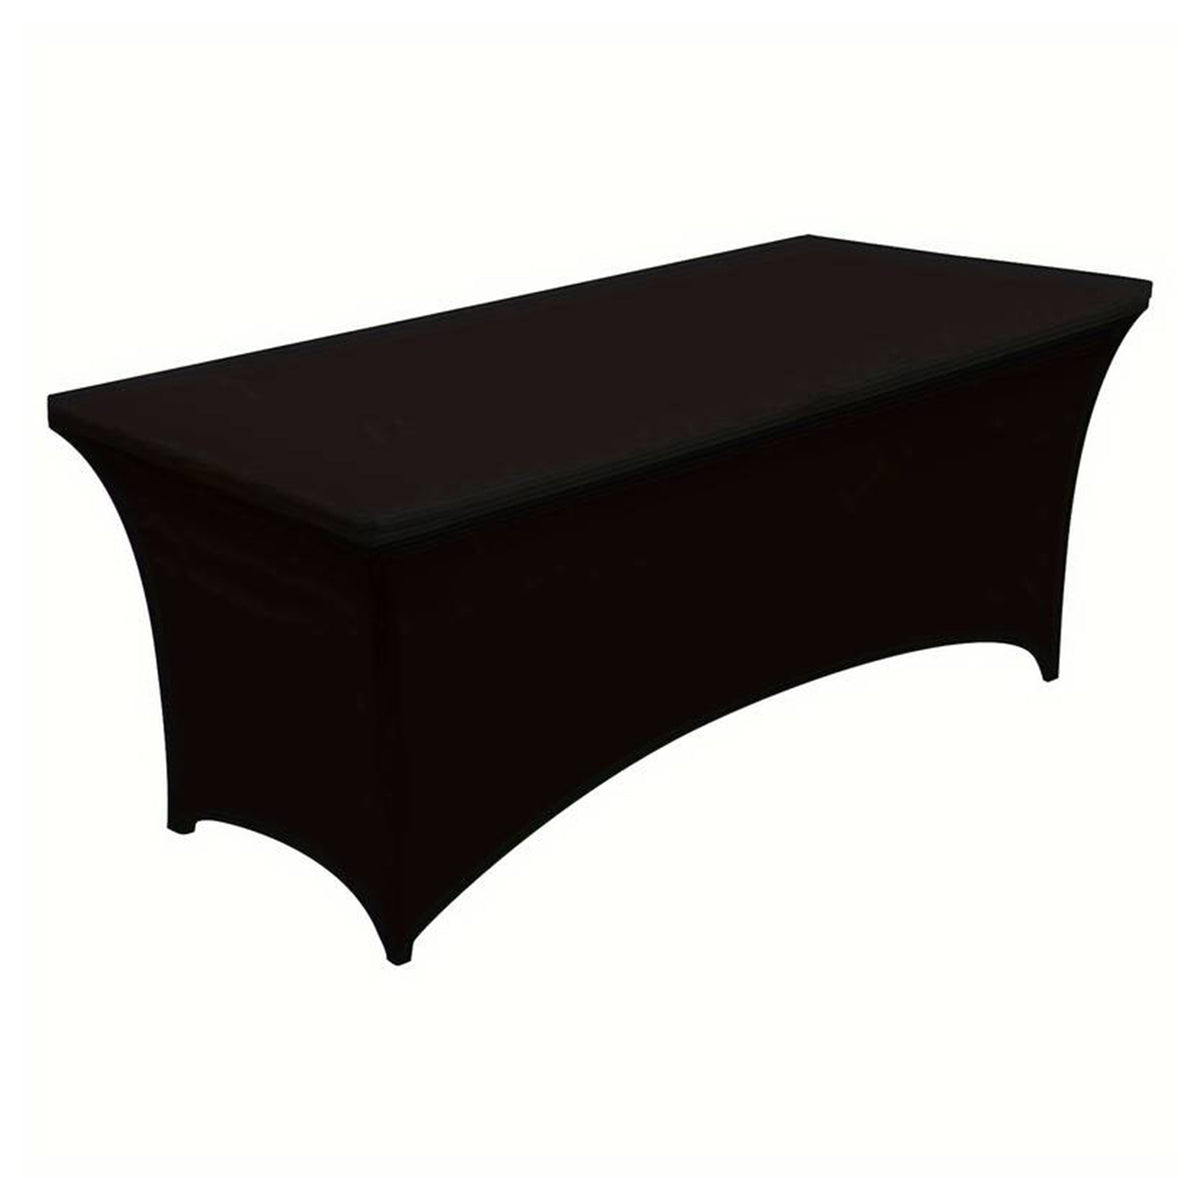 غطاء الطاولة - لون أسود